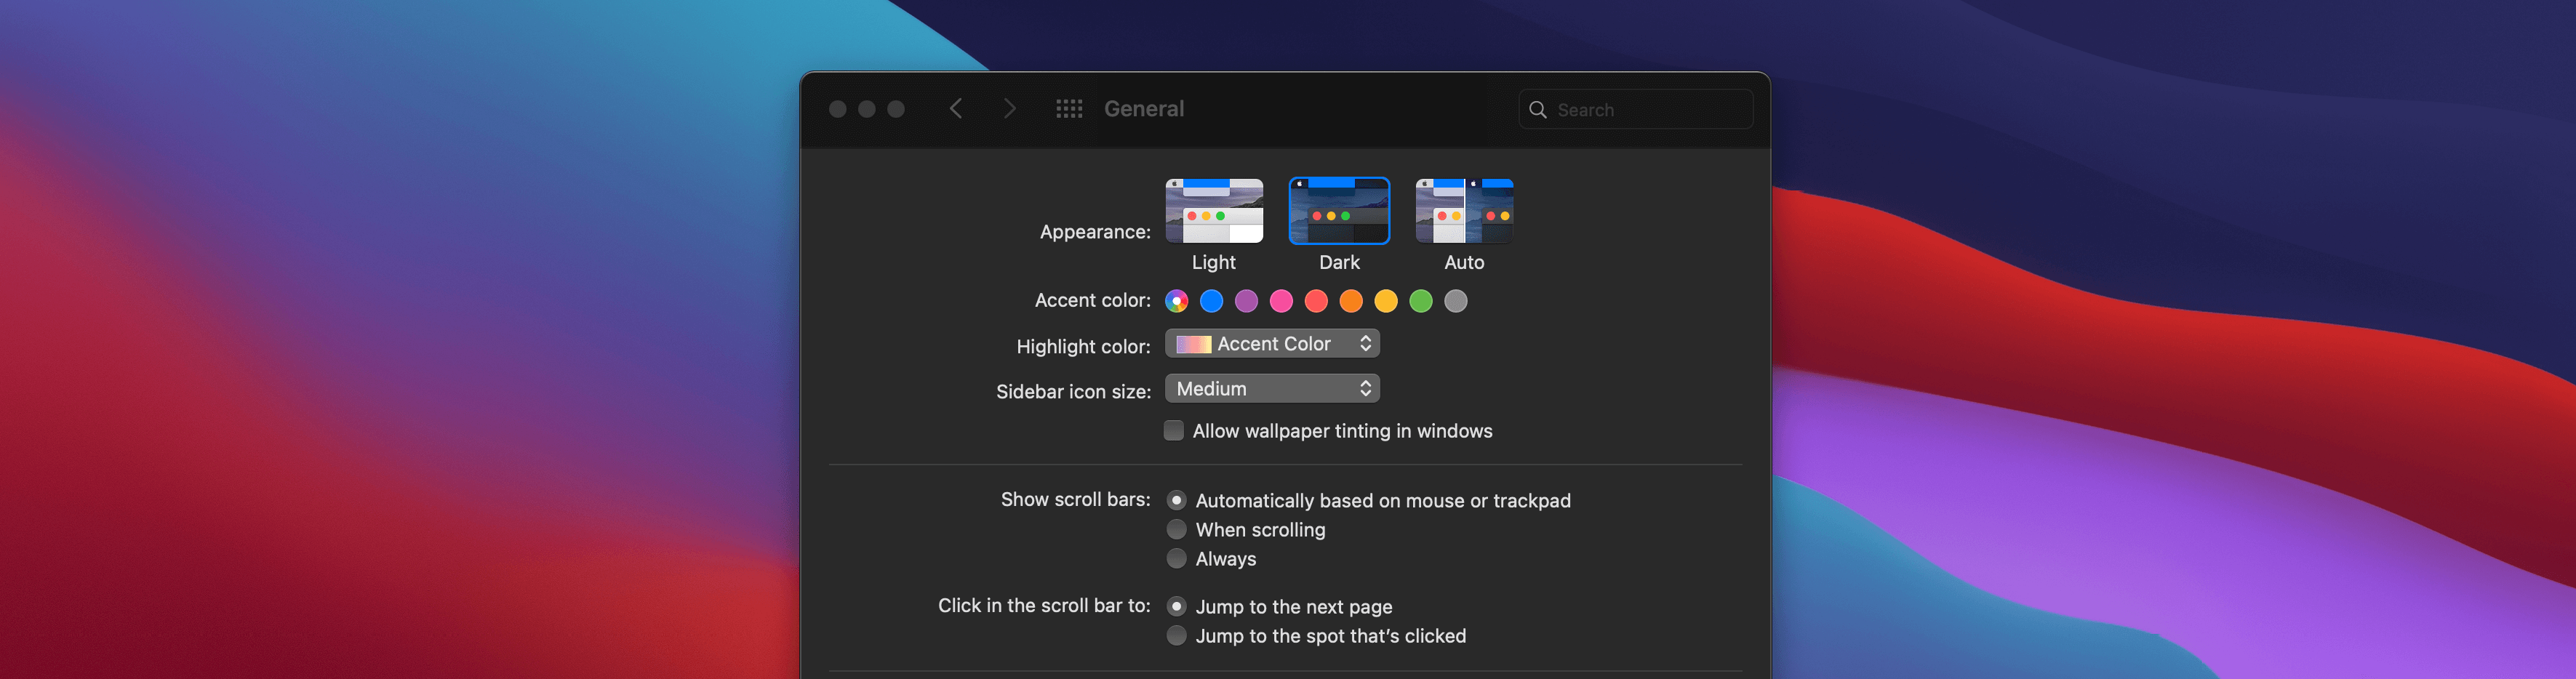 macOS 11 Big Sur добавляет новую опцию отключения Desktop Tinting, чтобы сделать темный режим еще темнее